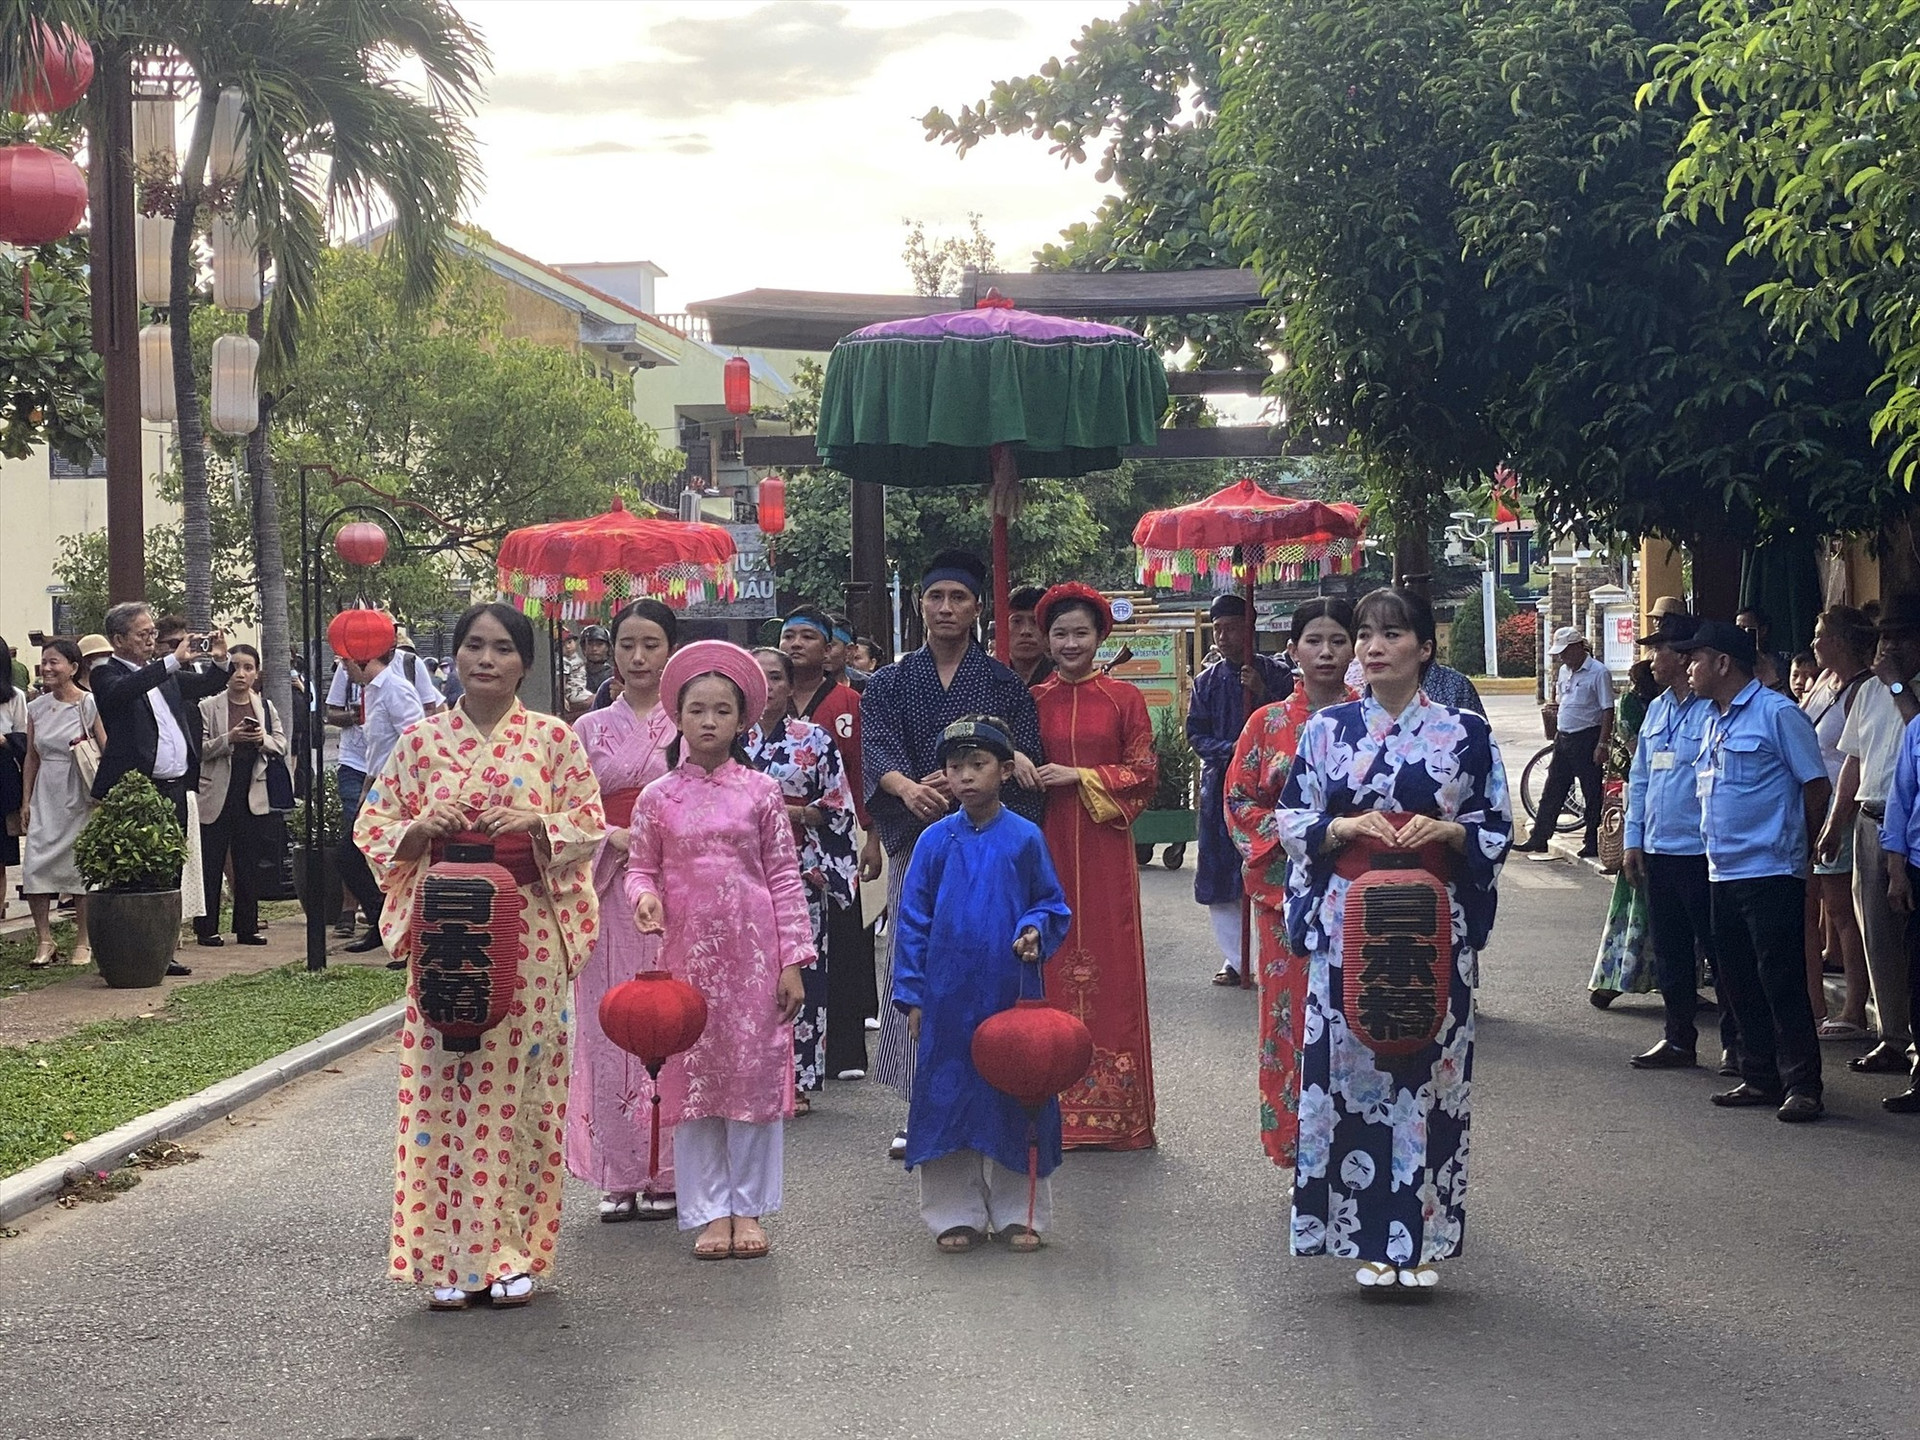 Tái hiện đám rước Công nữ Ngọc Hoa và thương nhân Nhật Bản Araki Sotaro, tiết mục mang dấu ấn của mỗi sự kiện Giao lưu Văn hóa Hội An - Nhật Bản . Ảnh: K.L